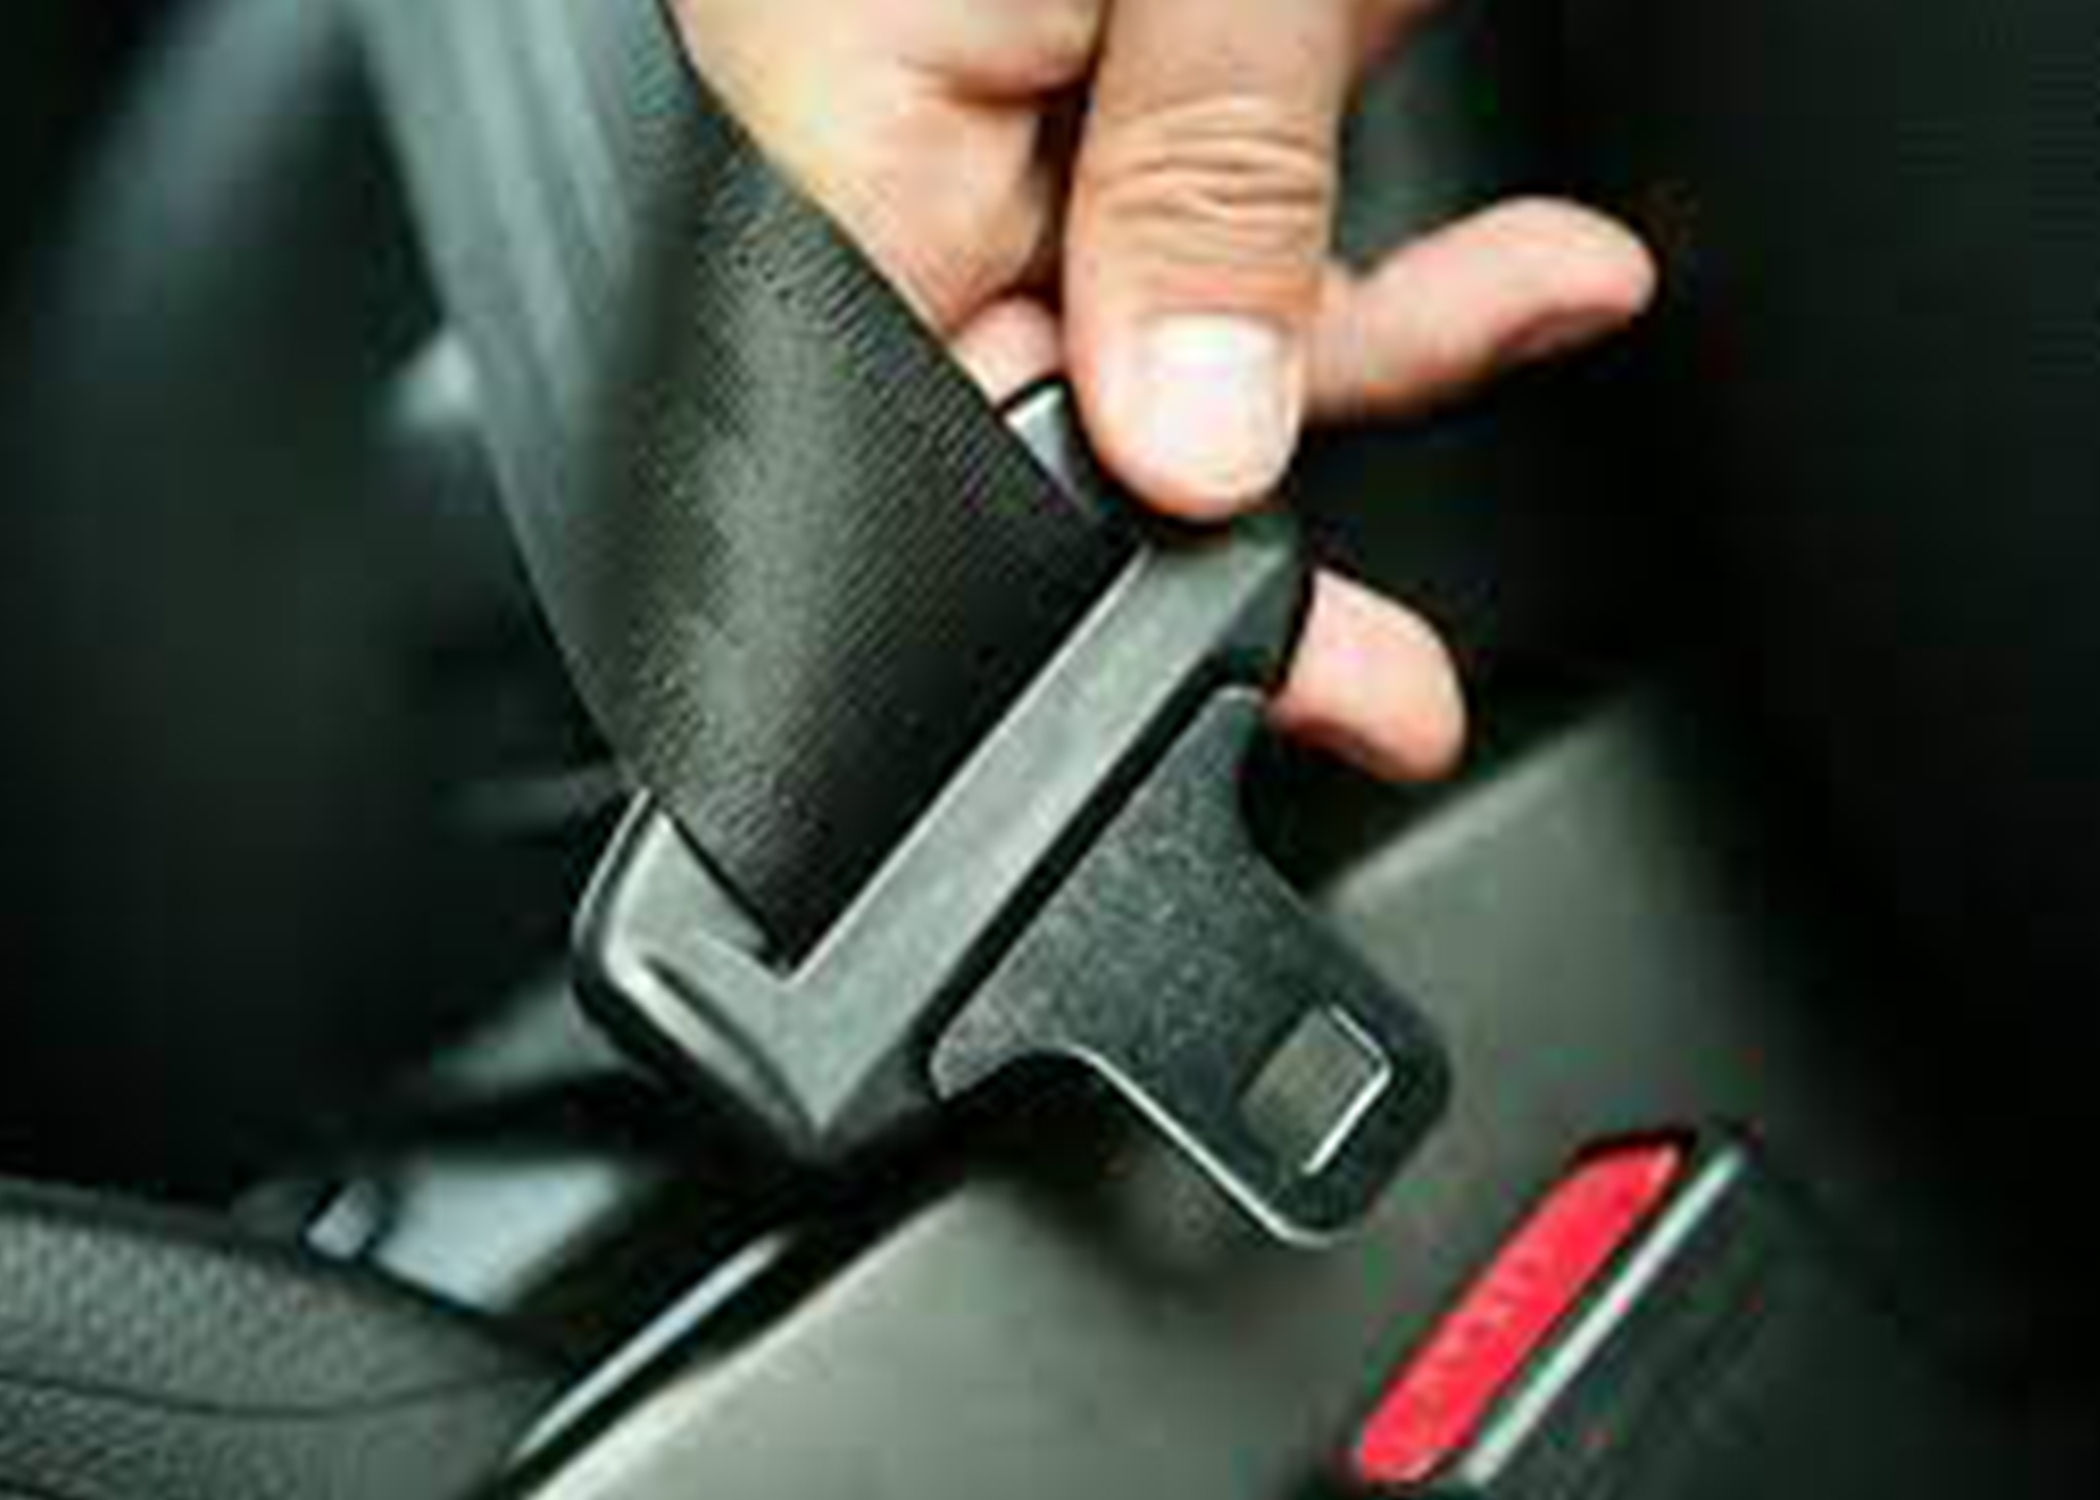 New Seatbelt 1.jpg